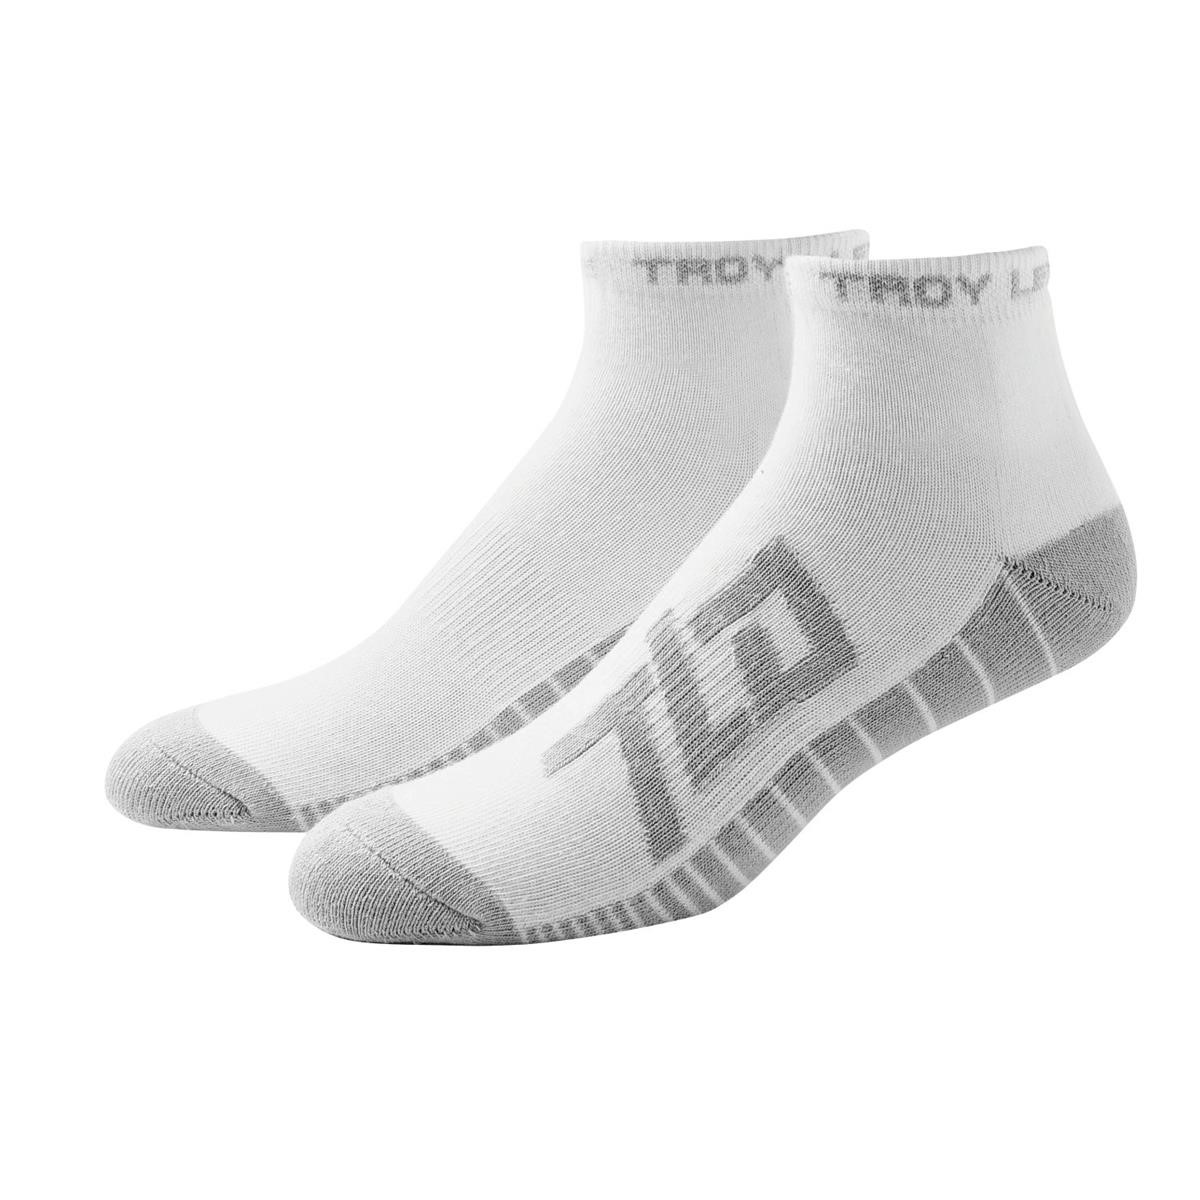 Troy Lee Designs Socks Factory Quarter White, 3 Pack